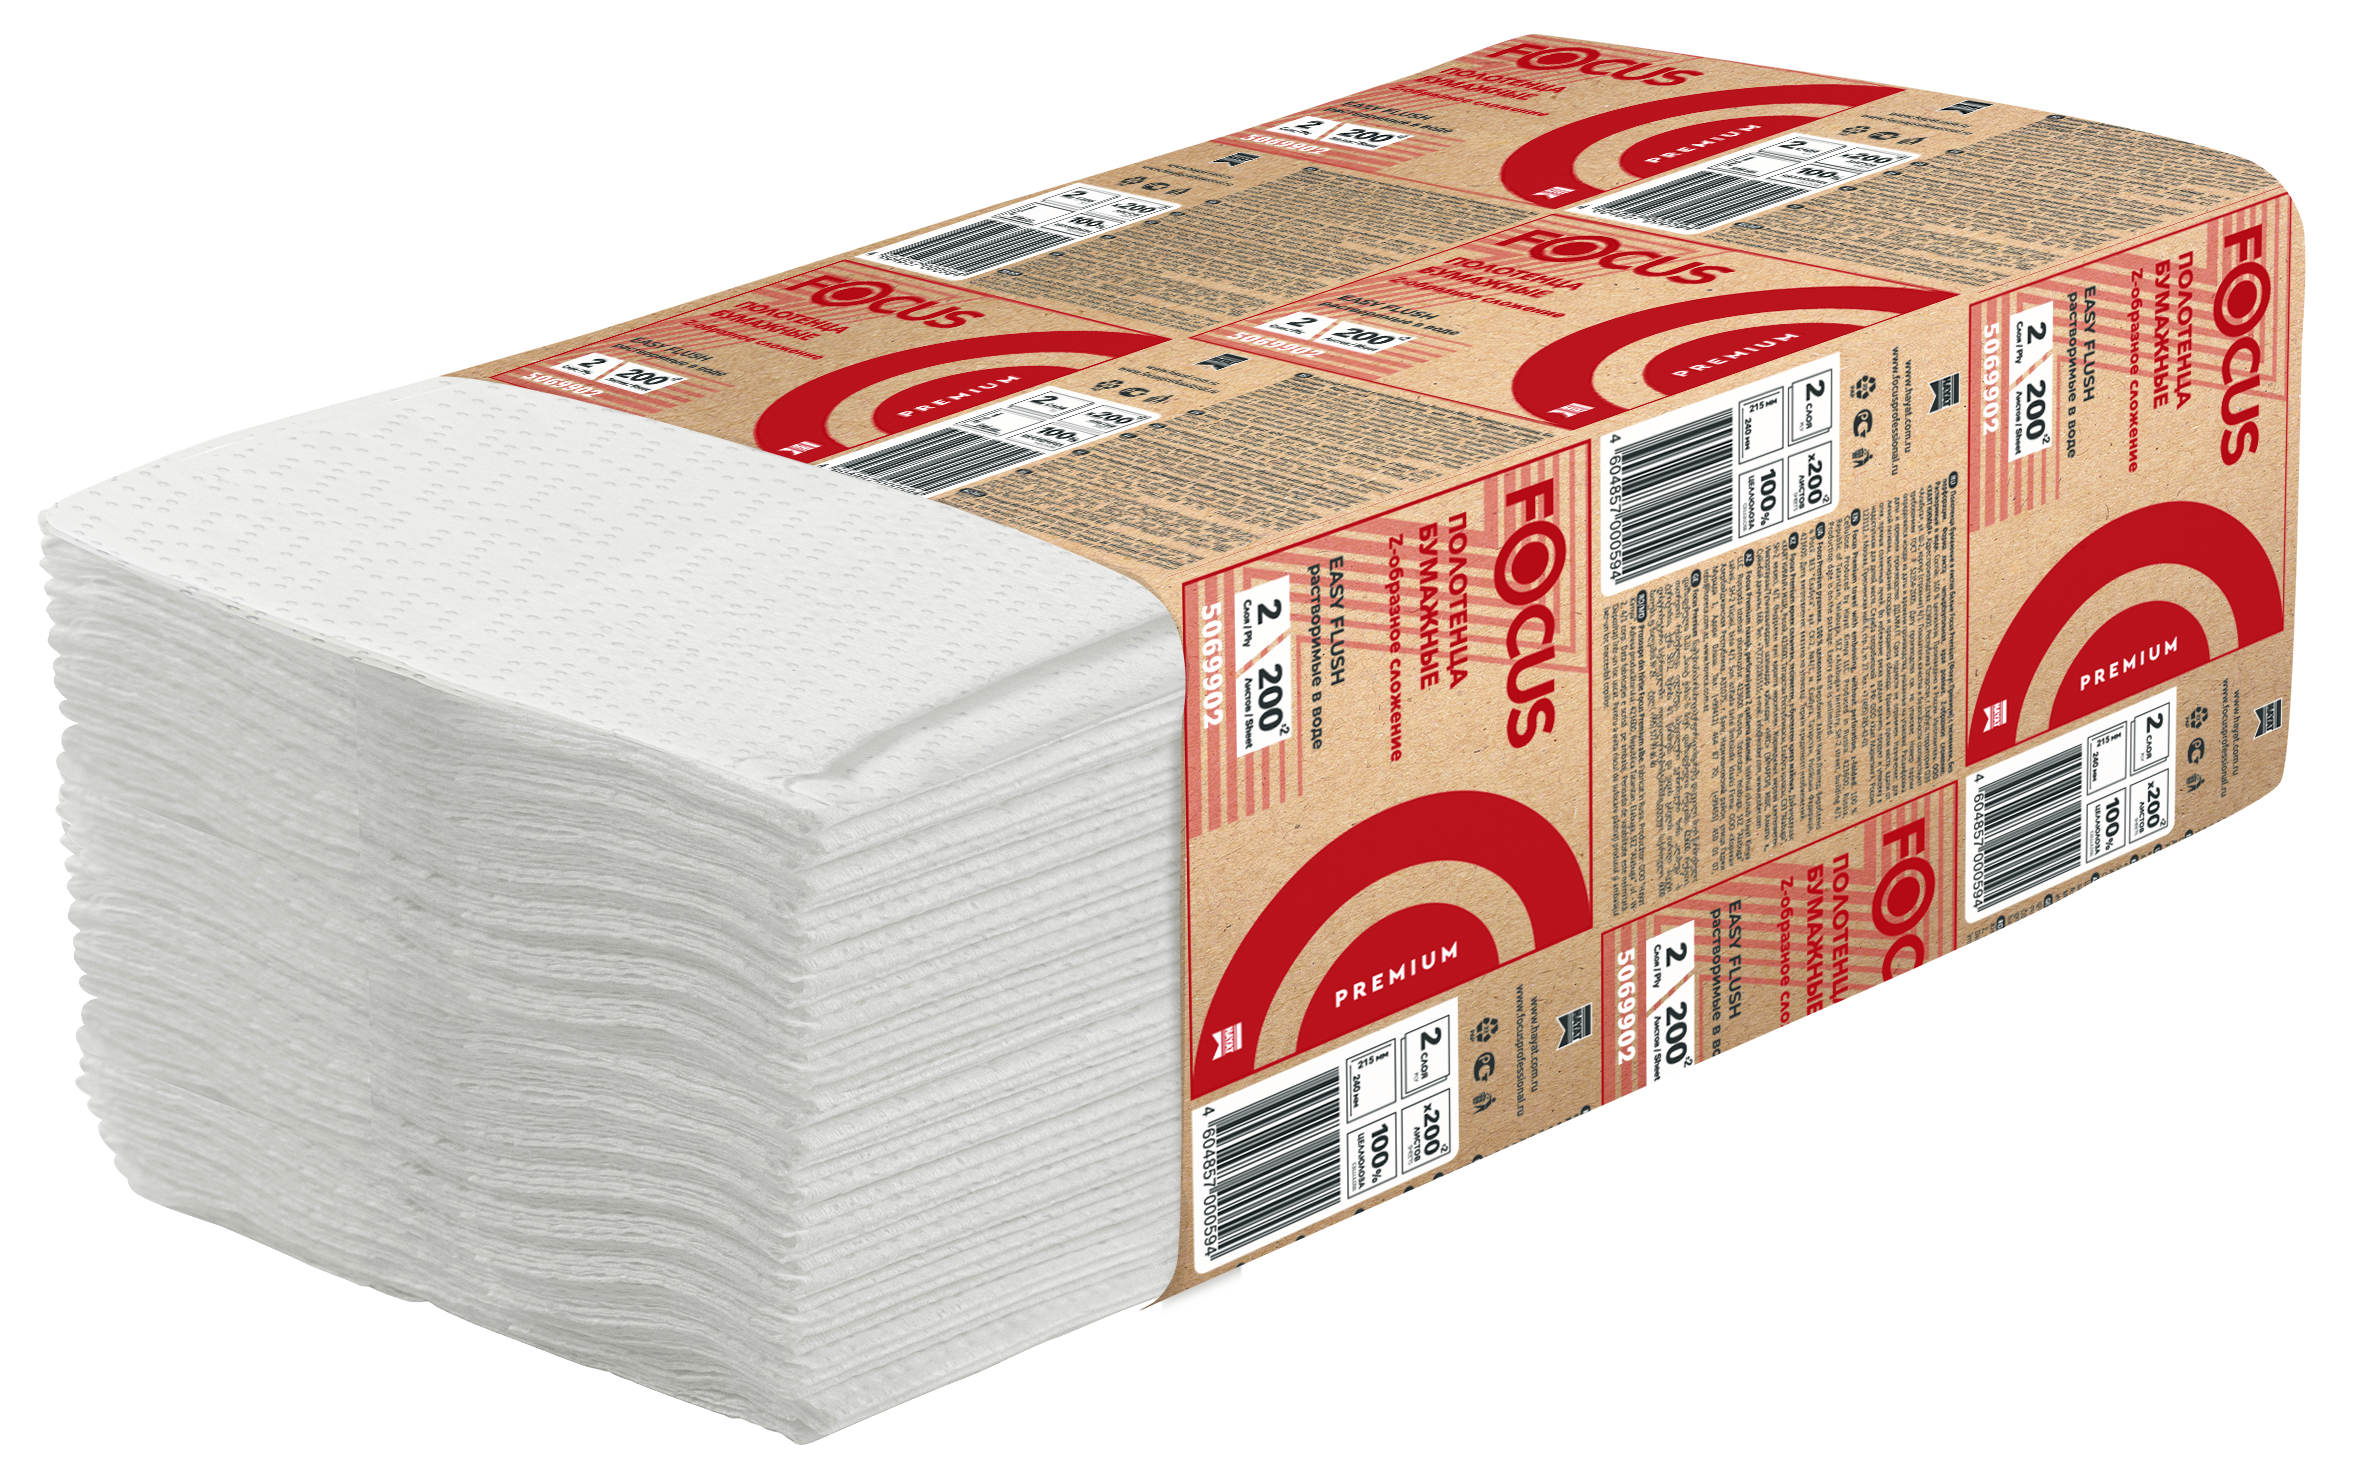 5069902 Листовые бумажные полотенца Focus Premium белые двухслойные Z-сложения, 20 пачек по 200 лист